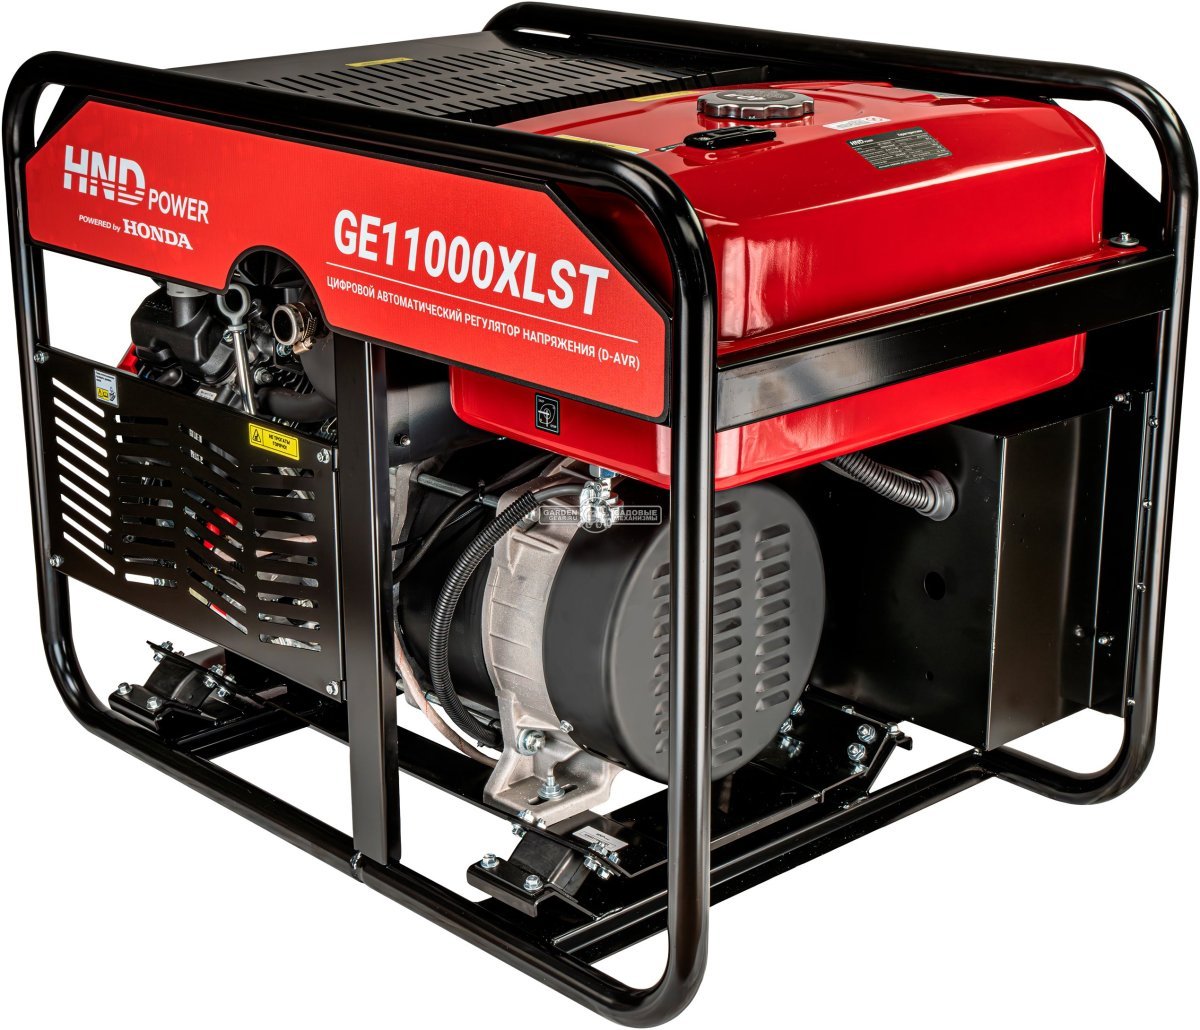 Бензиновый генератор HND GE11000XLST двухрежимный 220/380В (PRC, Honda GX630, 11/12 кВт, электростартер, 40 л, 160 кг)